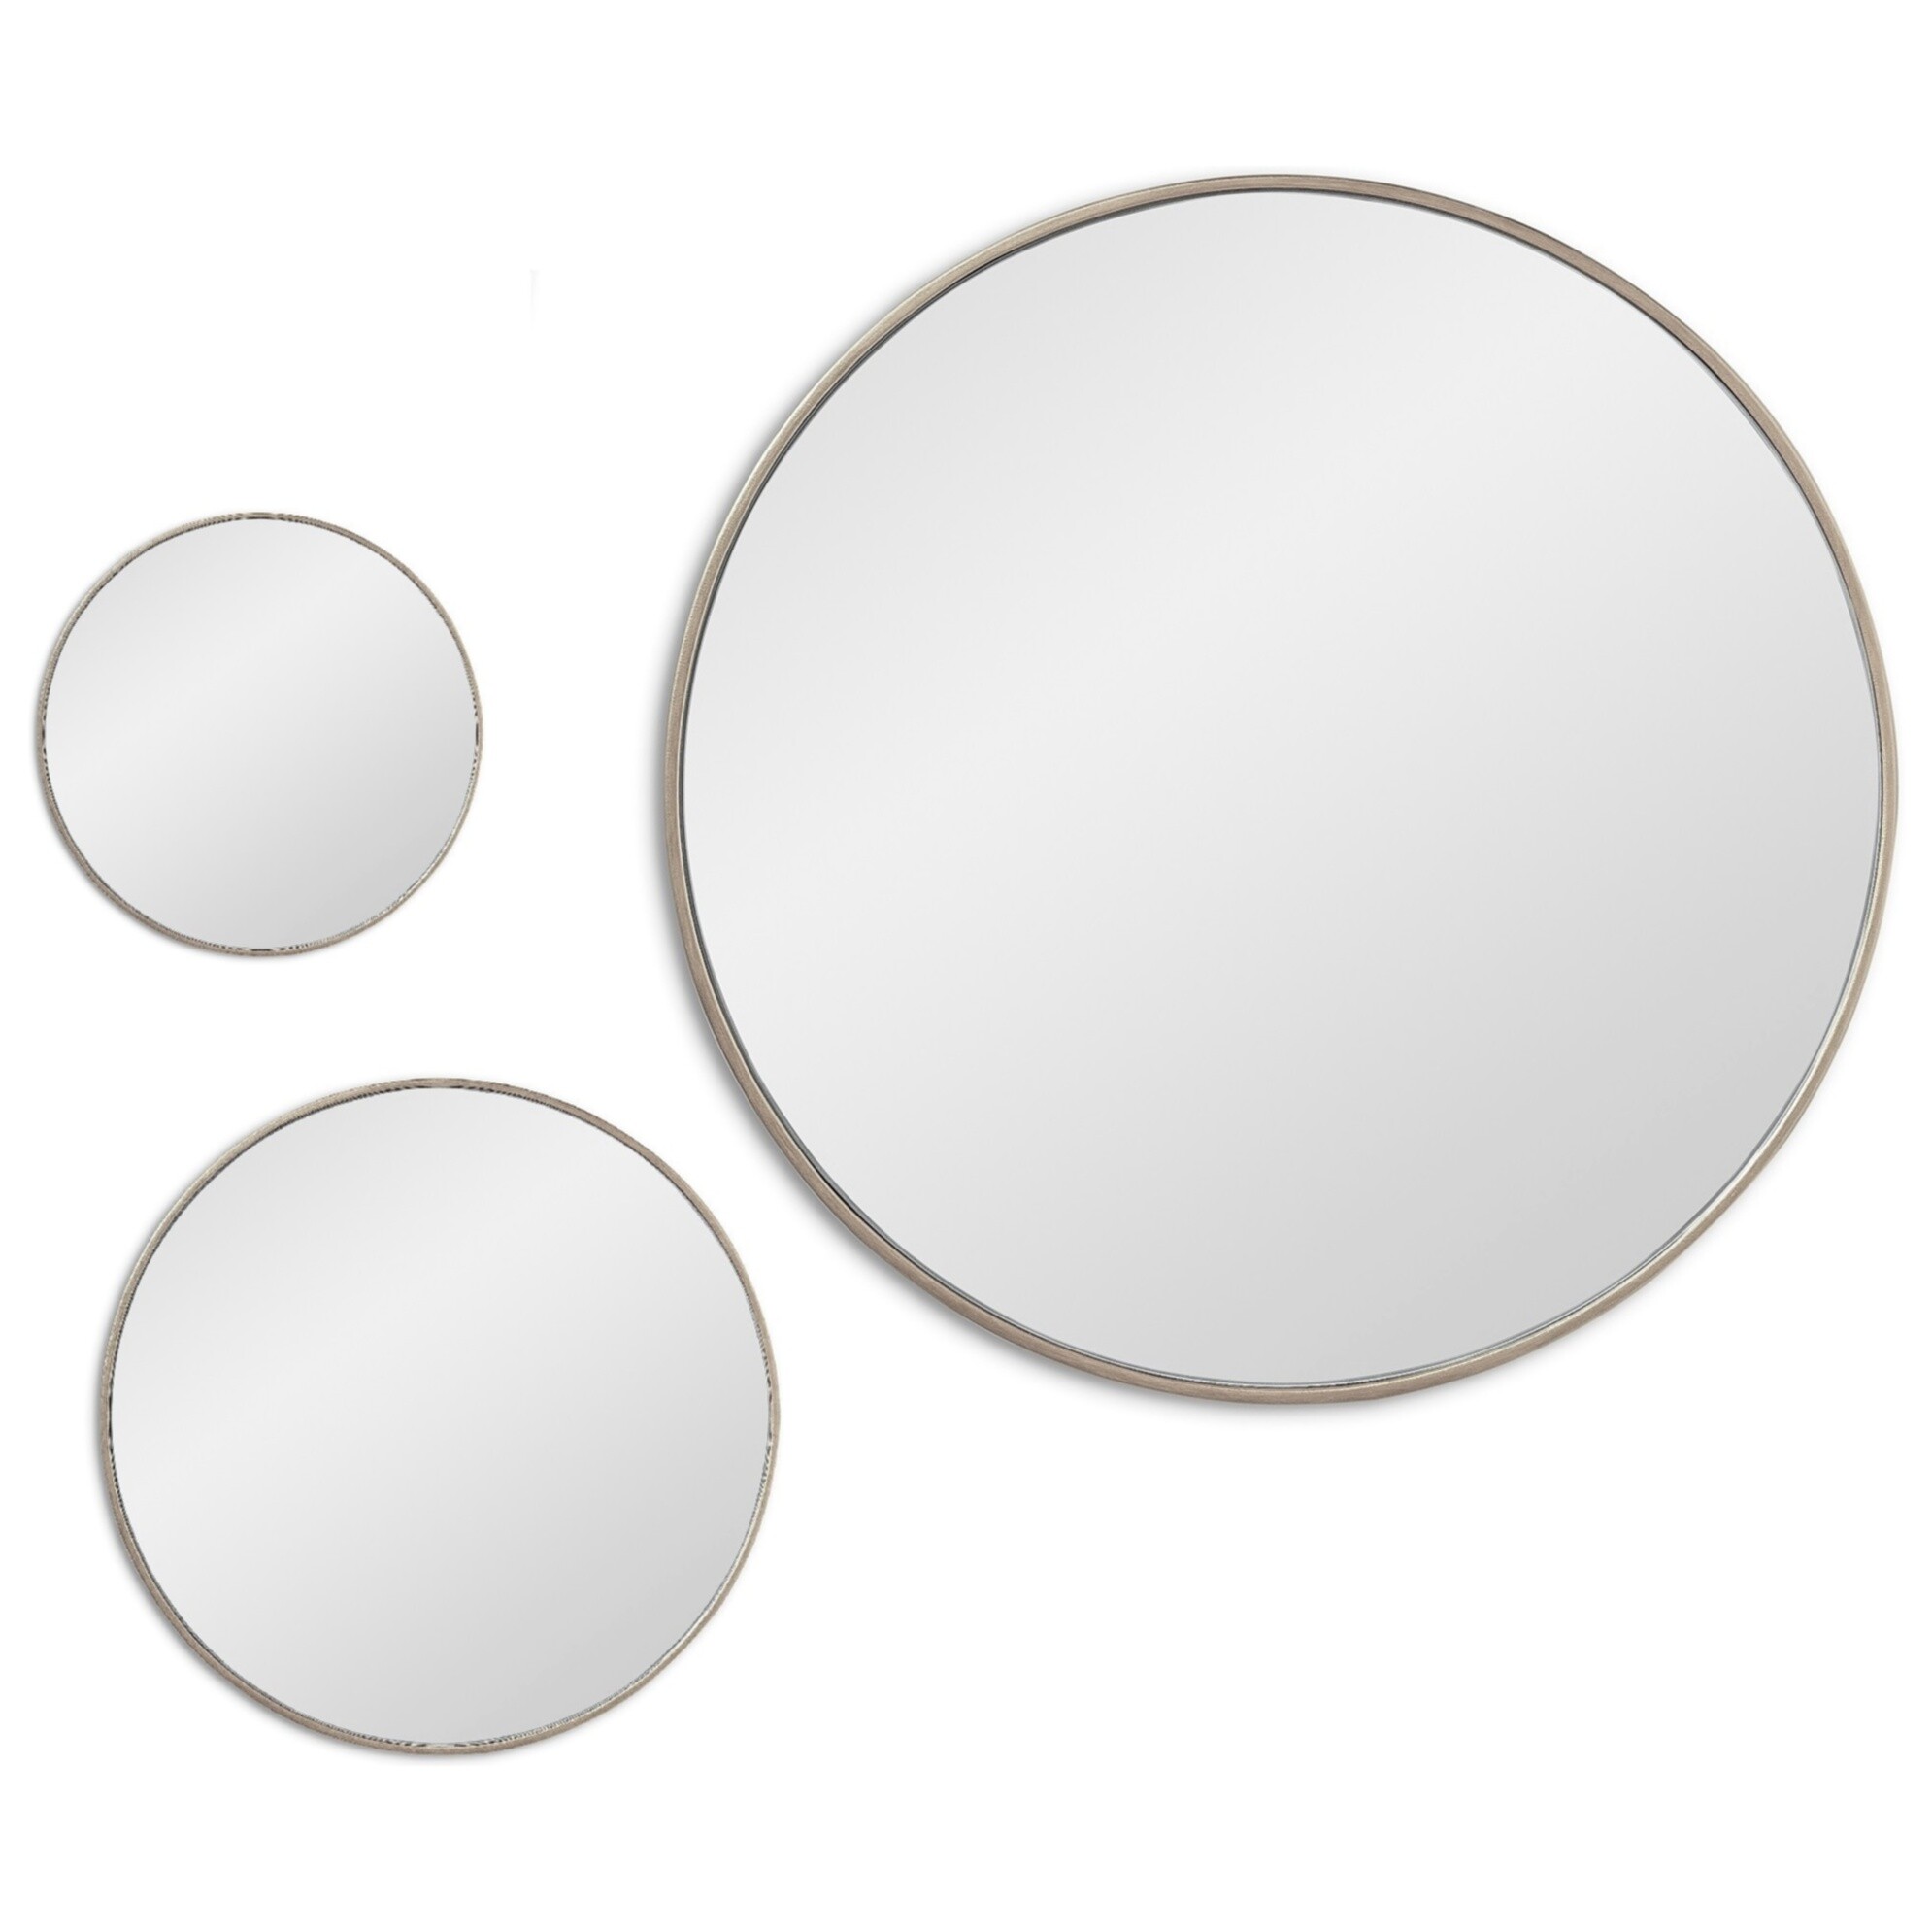 Зеркала настенные круглые в тонкой раме 3 шт серебро Mars Silver